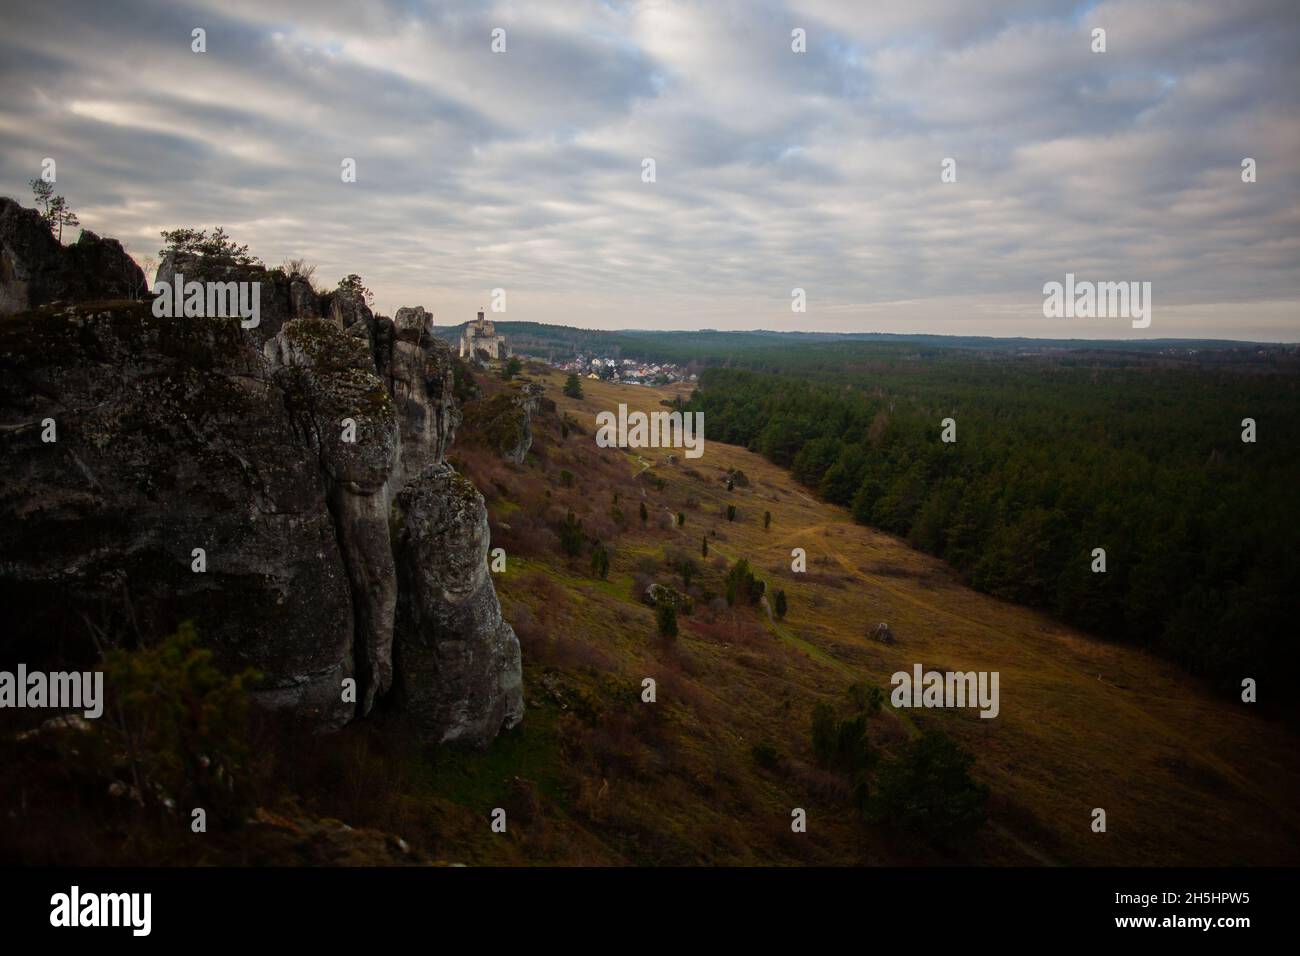 Panorama avec le château à Ogrodzieniec à distance, les ruines du château, la forêt, les rochers et les collines magnifique panorama sur le paysage à Trail of the Eagles' Nest Banque D'Images